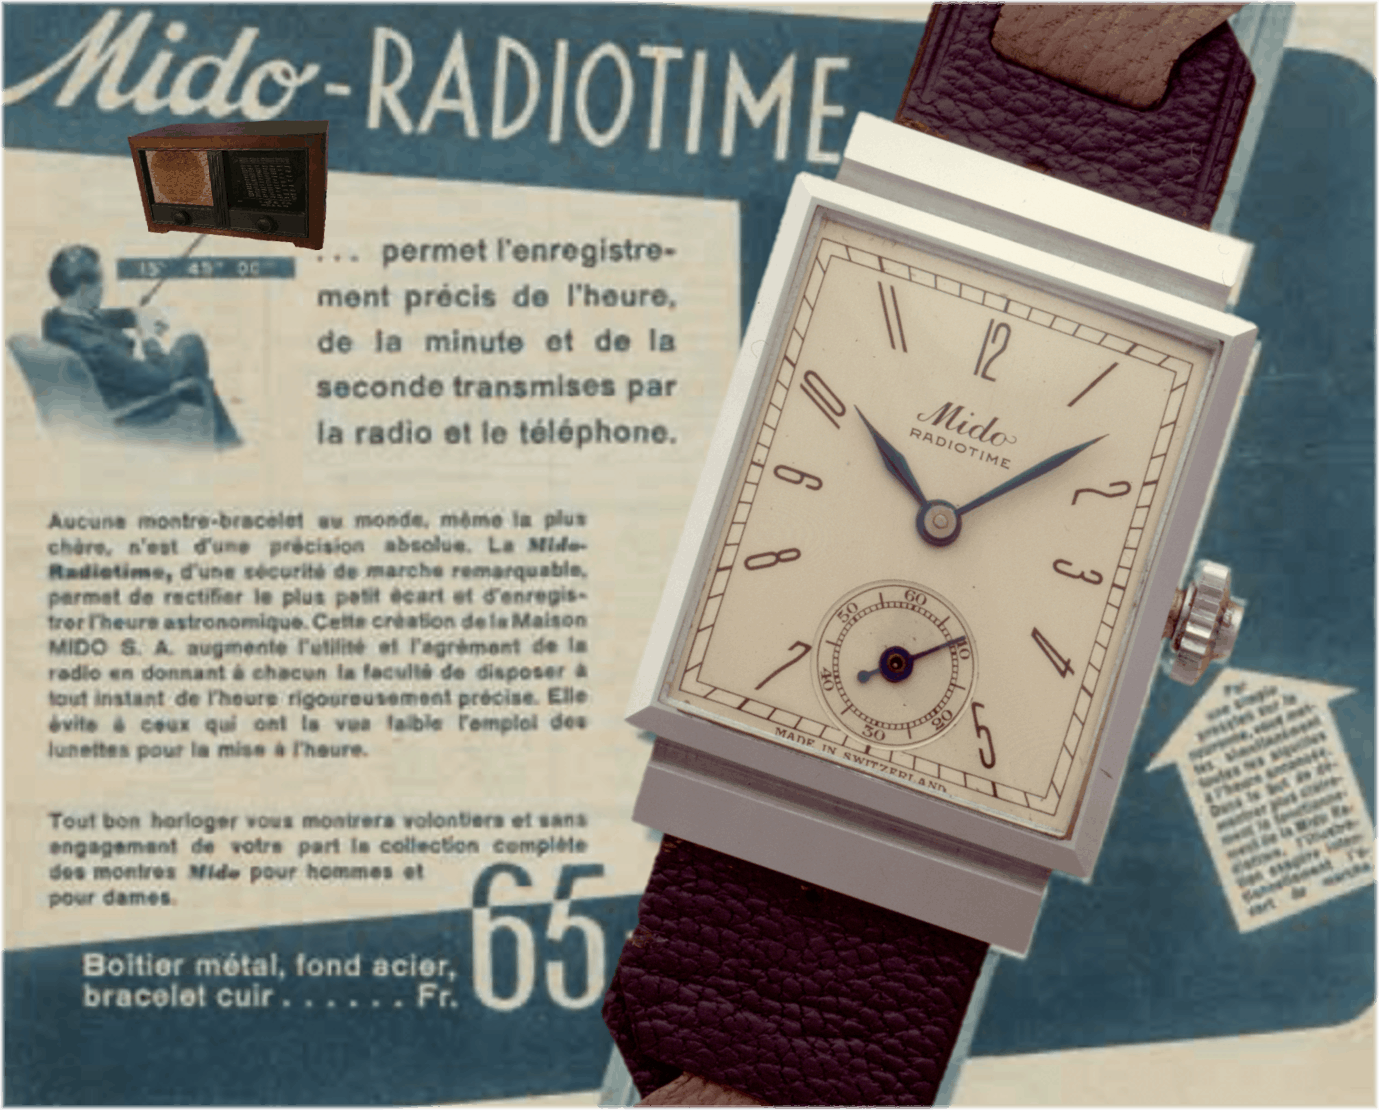 Vintageuhr Mido RadiotimeMido Radiotime: präzise Radio-Zeit per Knopfdruck